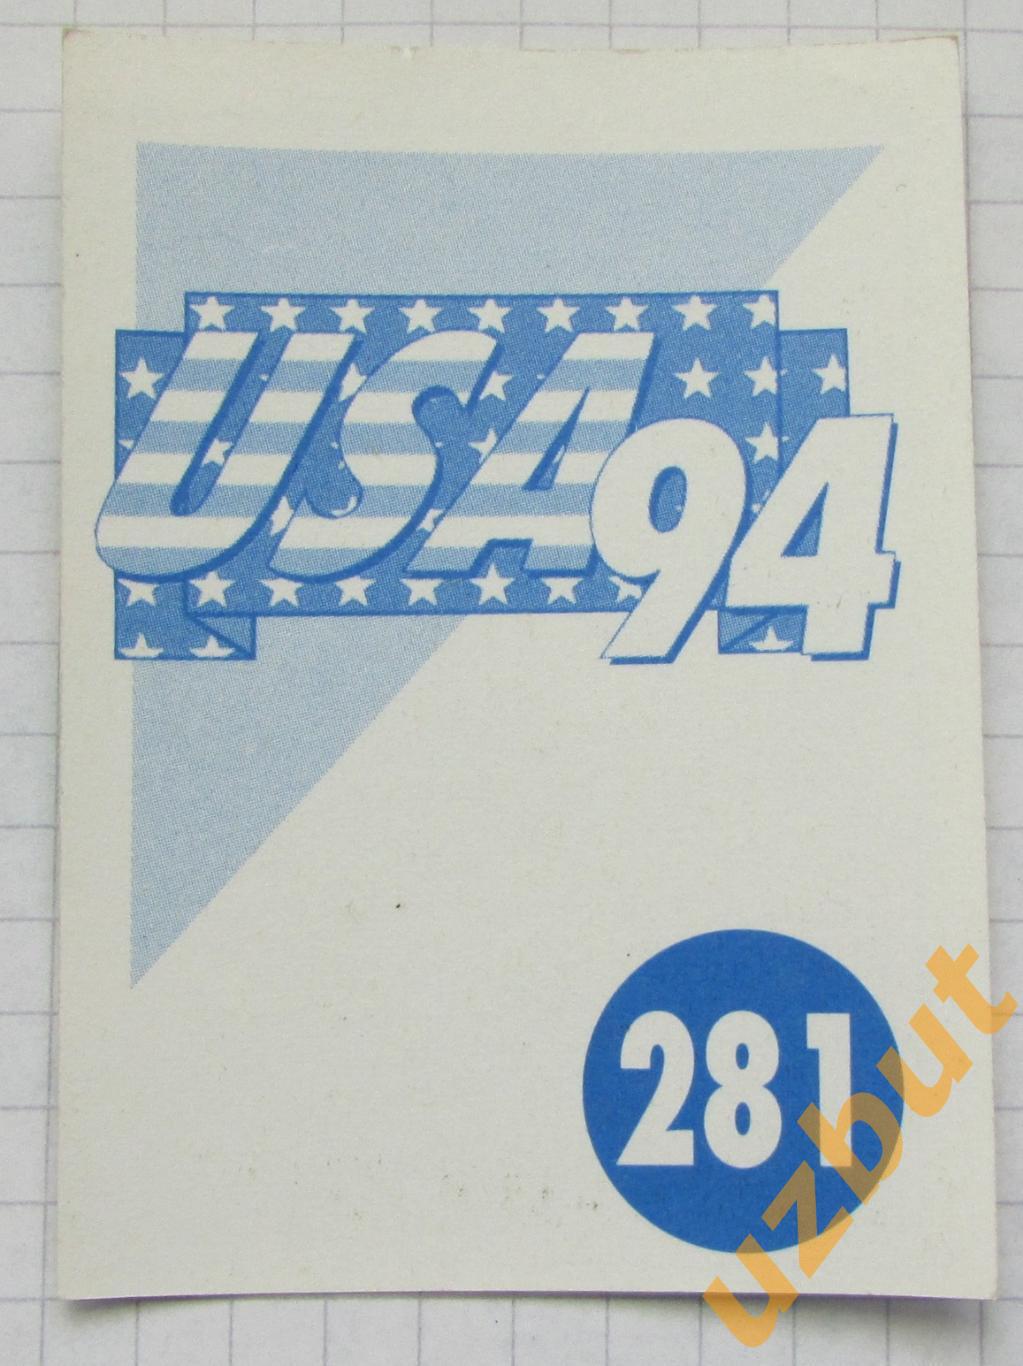 Наклейка Стадион Нью-Йорк 1 № 281 Euroflash ЧМ 1994 США 1